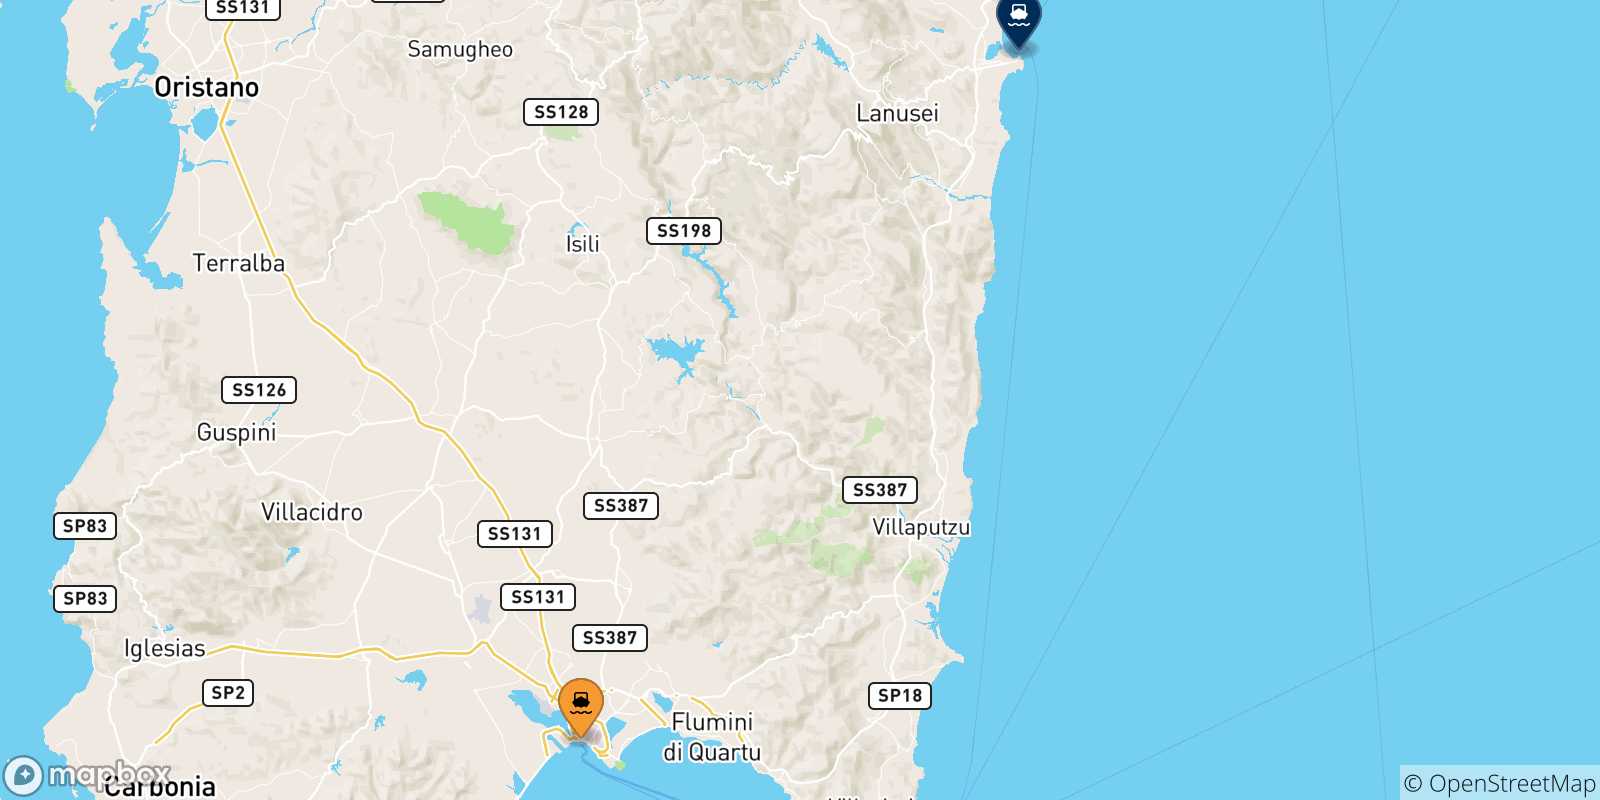 Mappa delle possibili rotte tra Cagliari e la Sardegna